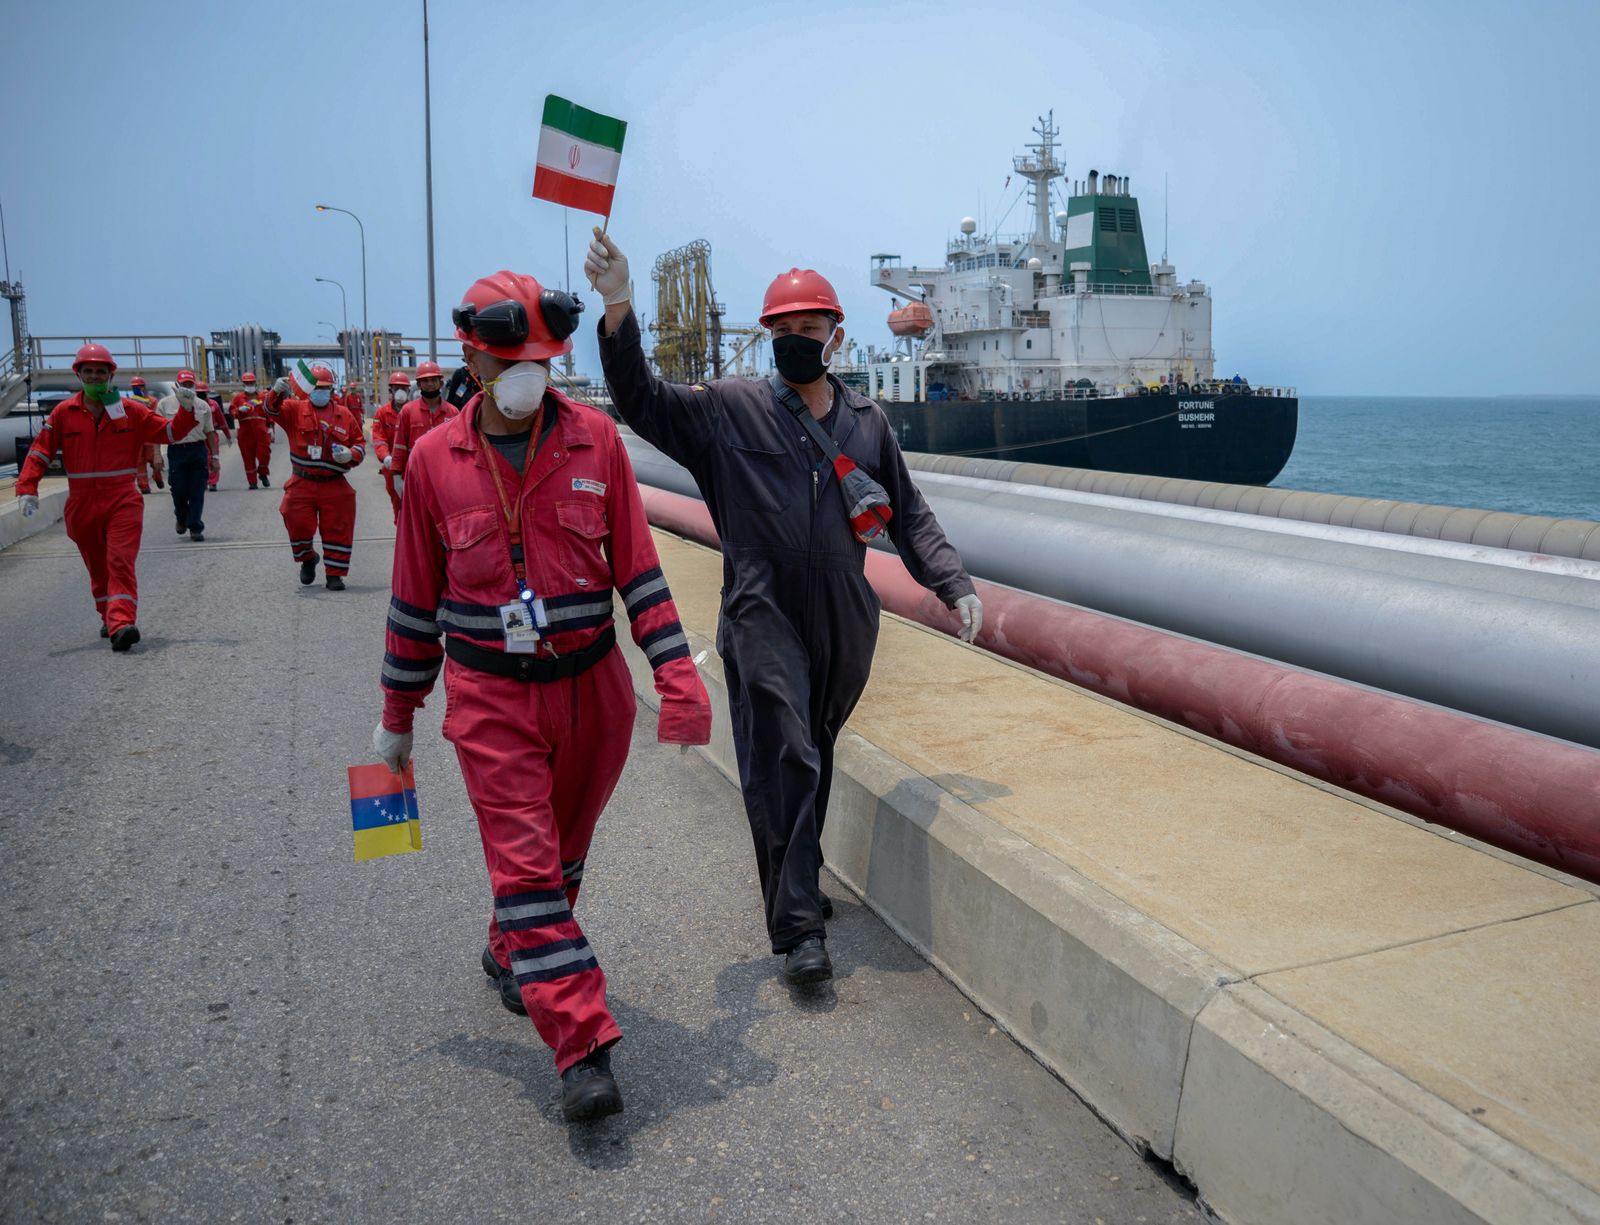 عامل بشركة النفط الوطنية الفنزويلية يرفع علم إيران في ميناء إل باليتو، في فنزويلا - AFP